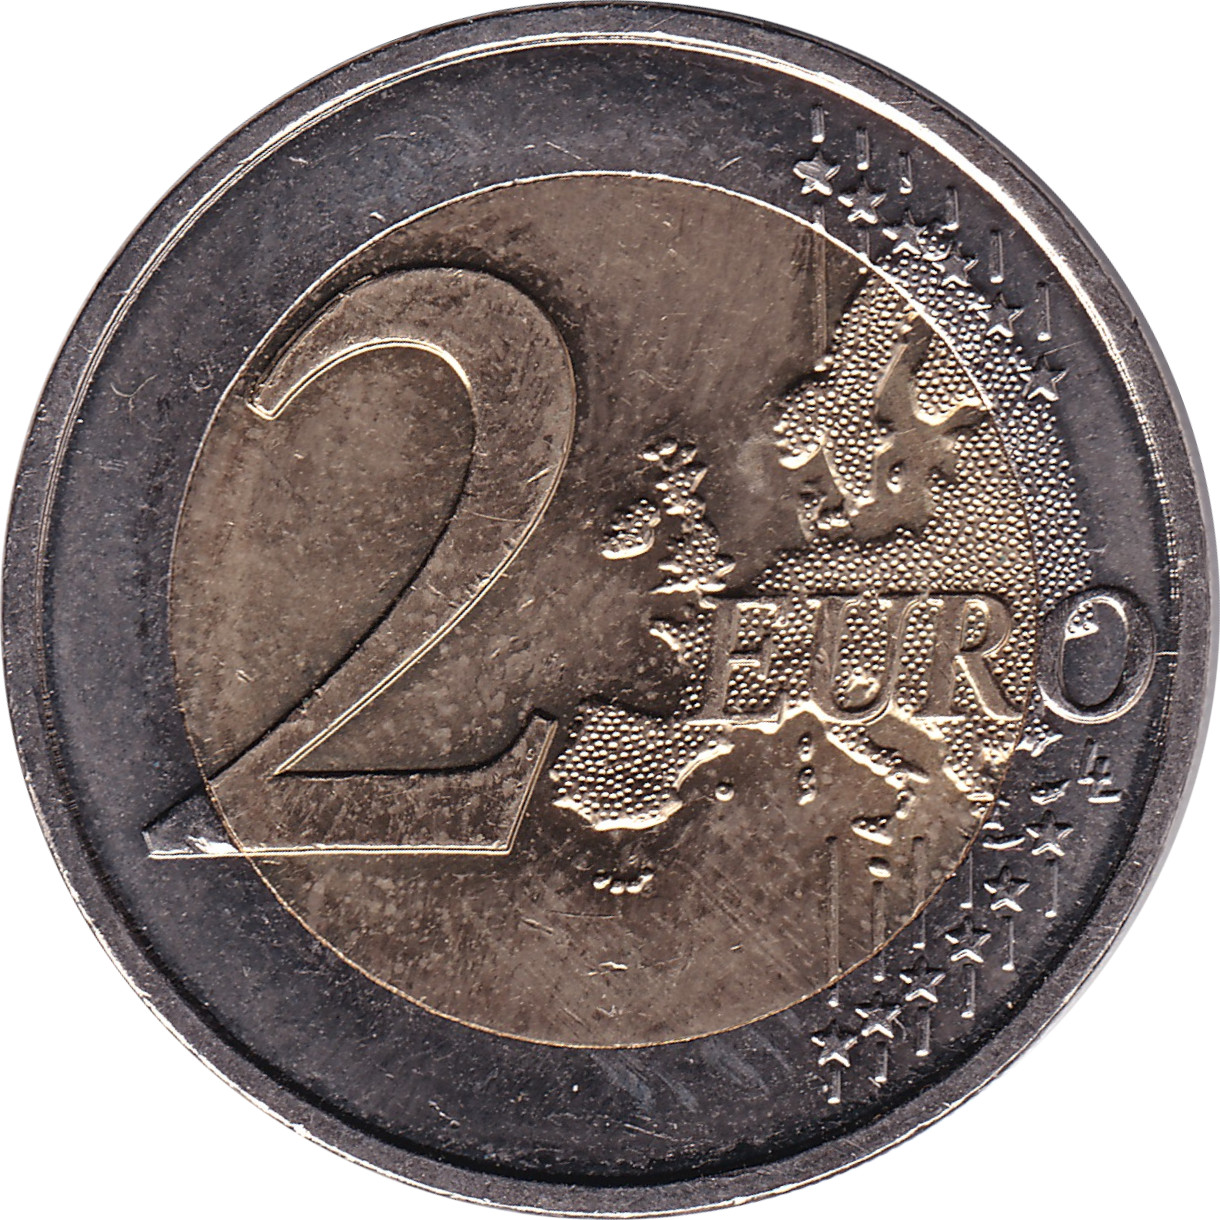 2 euro - Simone Veil